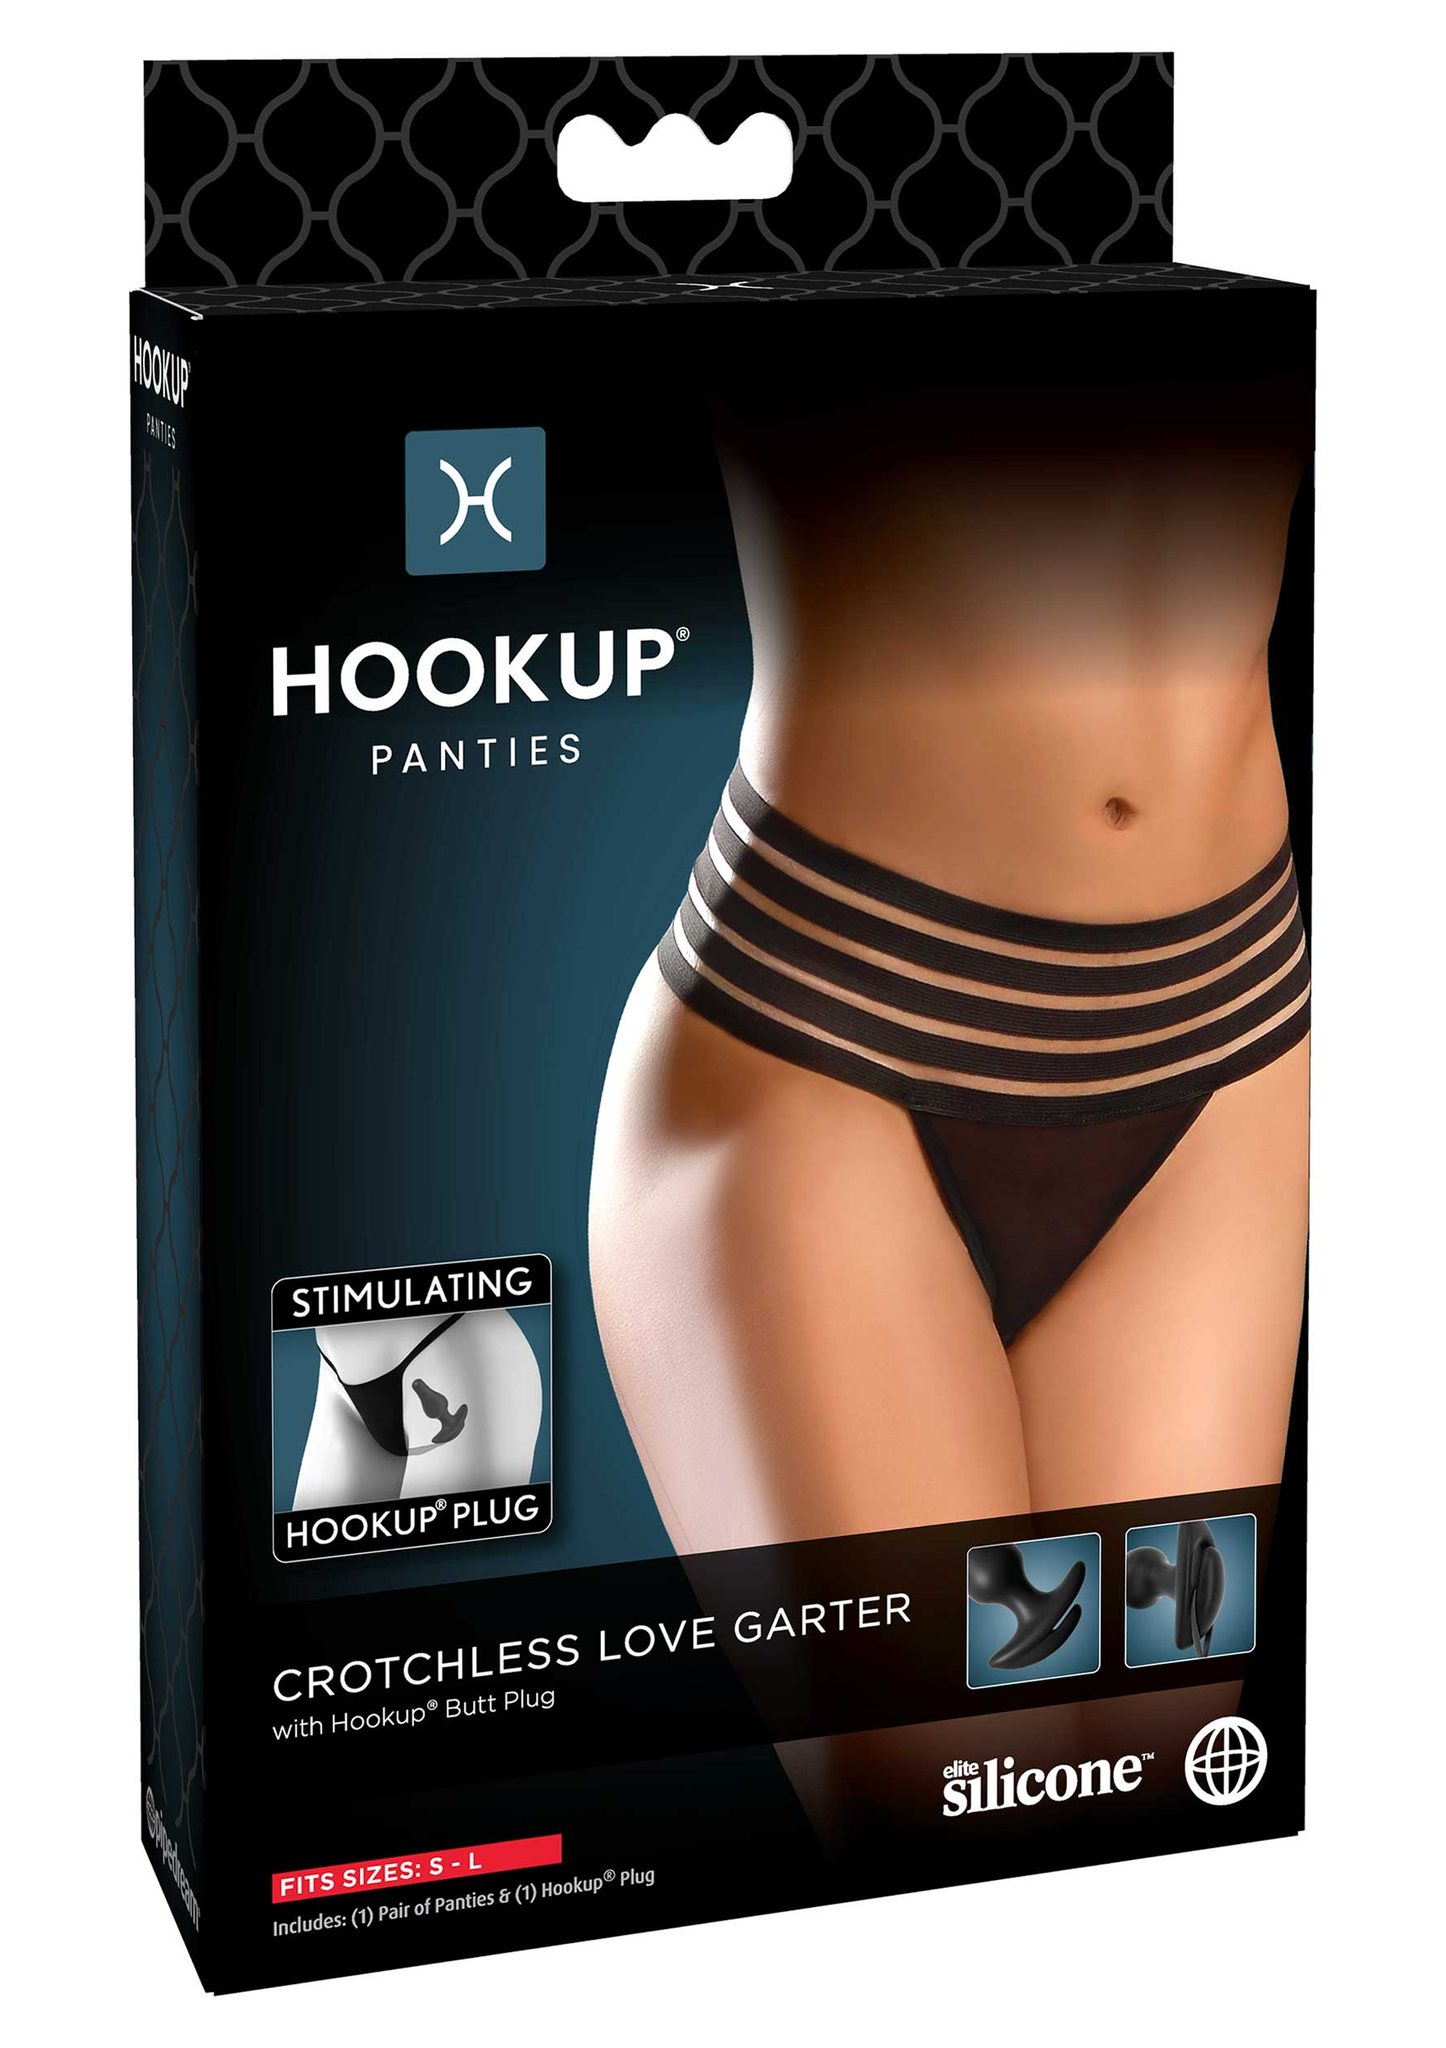 Hookup panties, Crotchless Love Garter